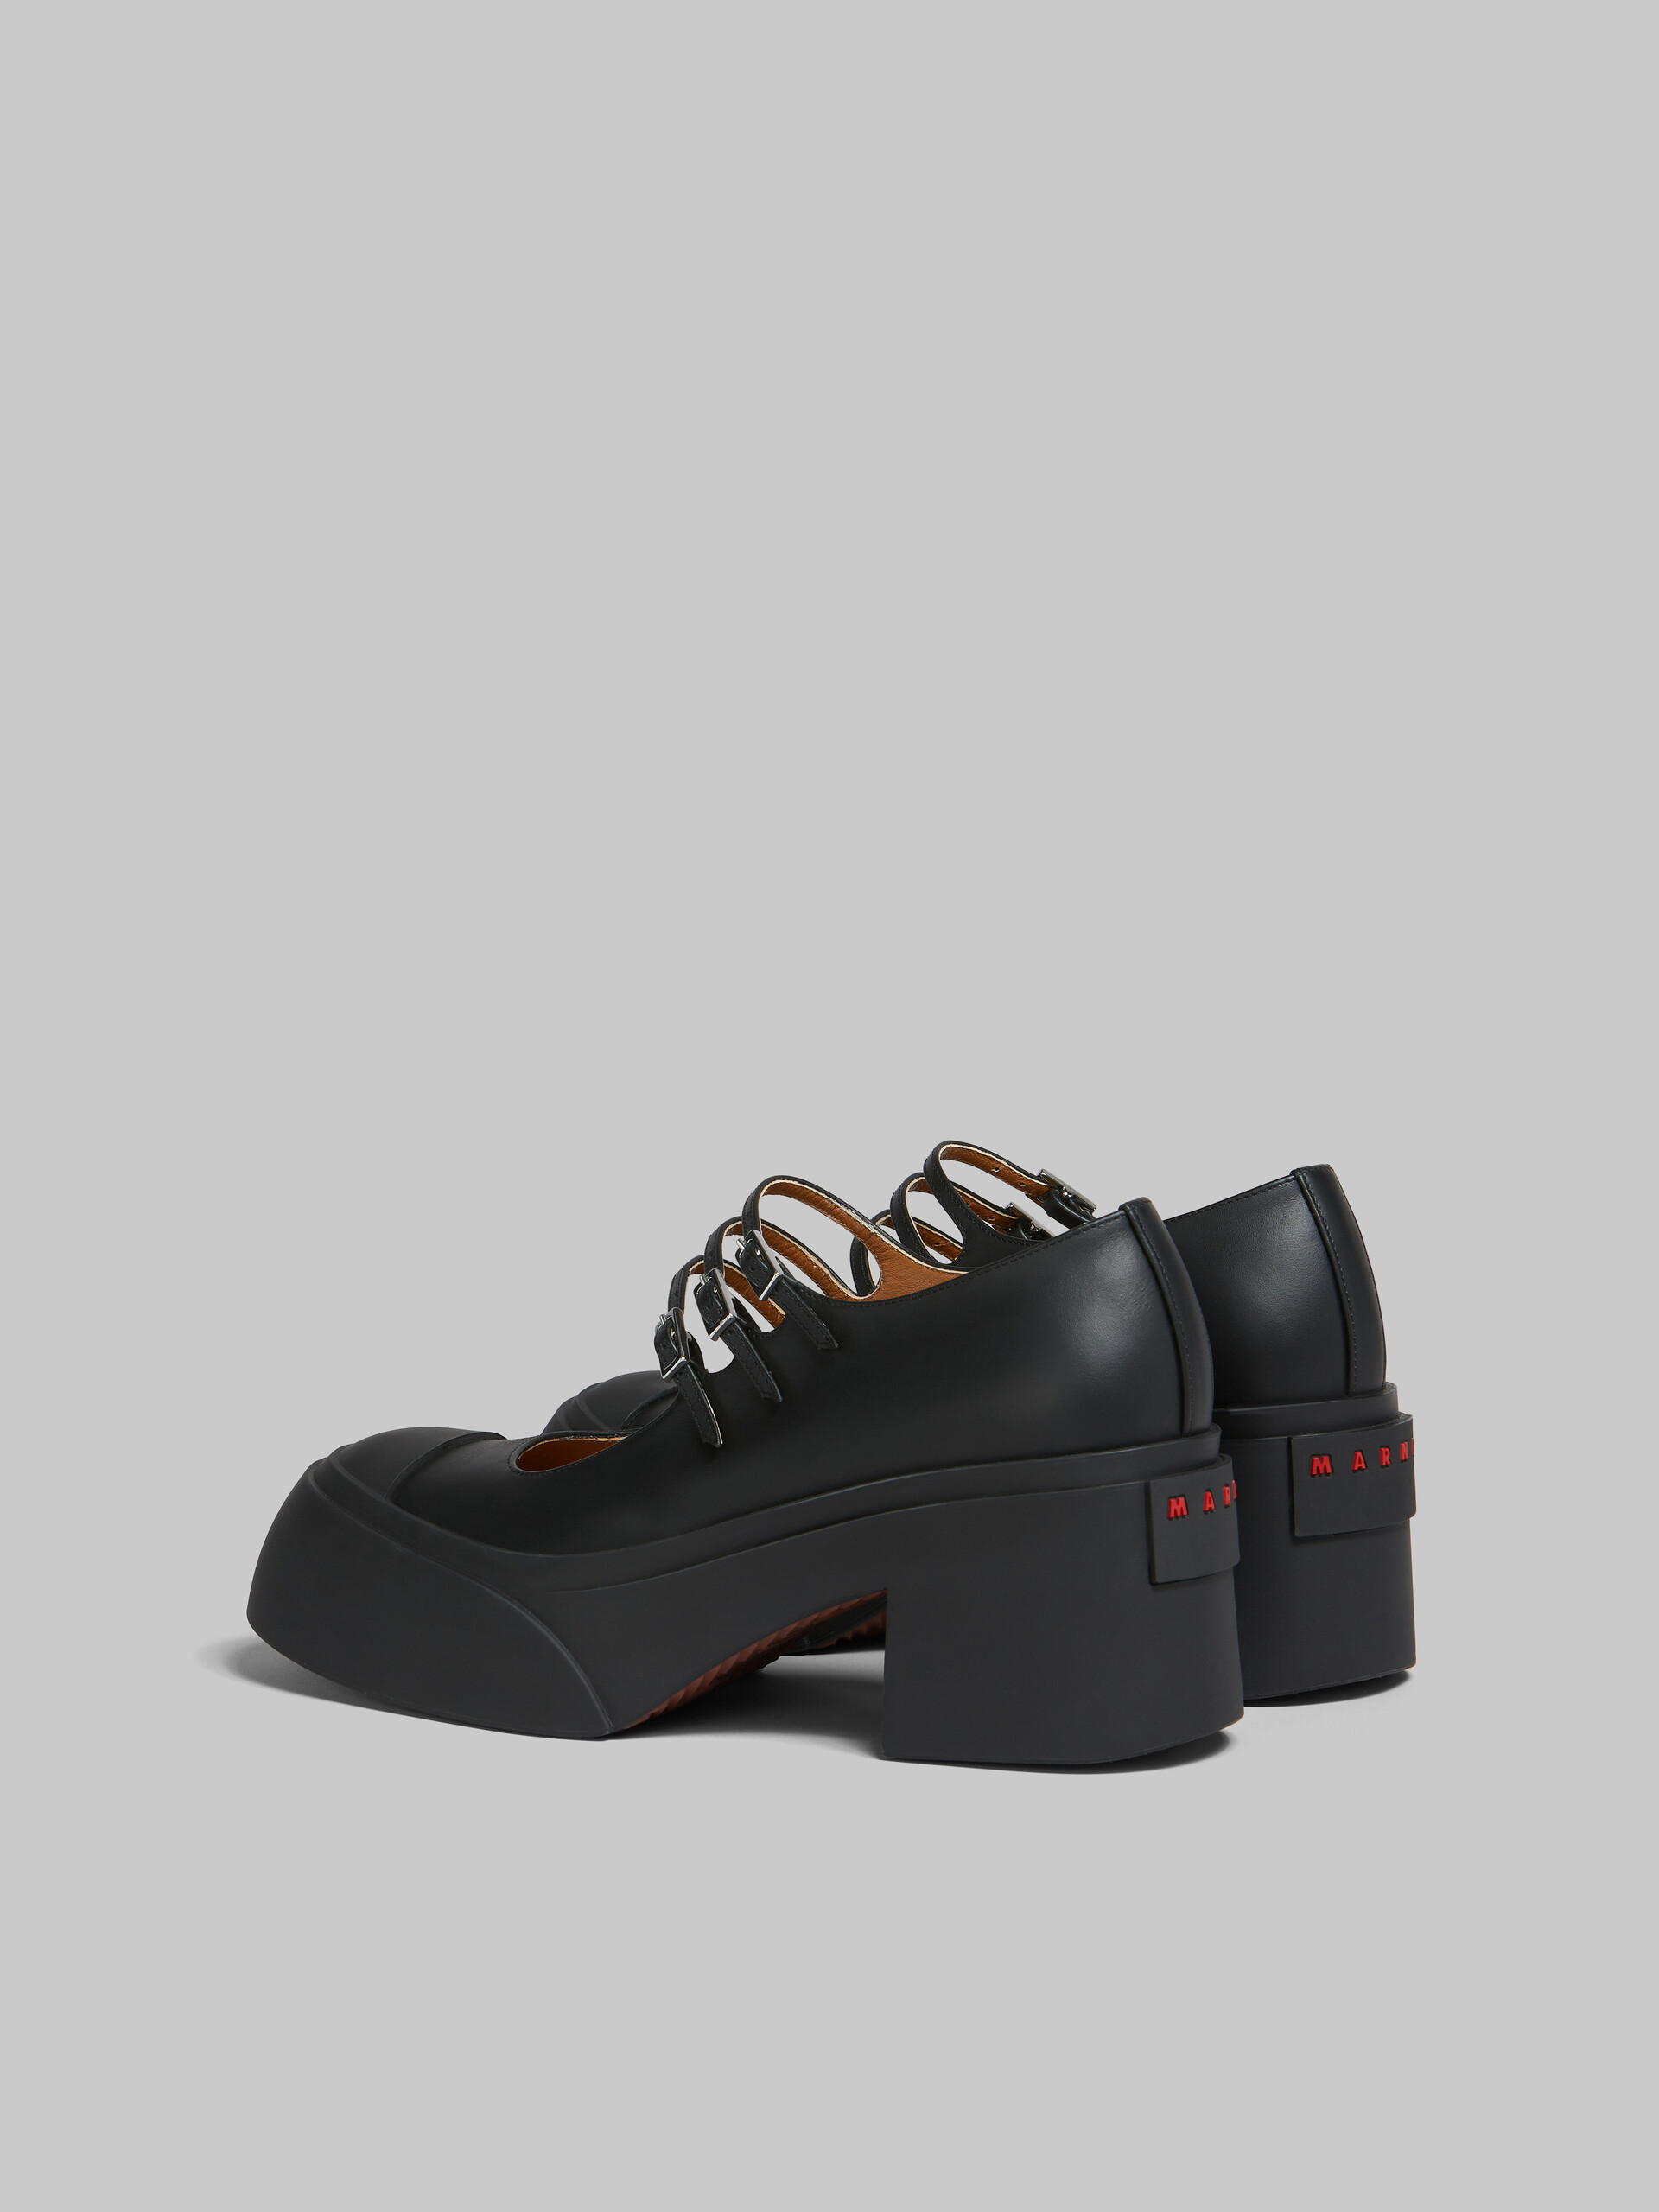 Scarpa Pablo Mary Jane in pelle nera con triplo cinturino - Sneakers - Image 3